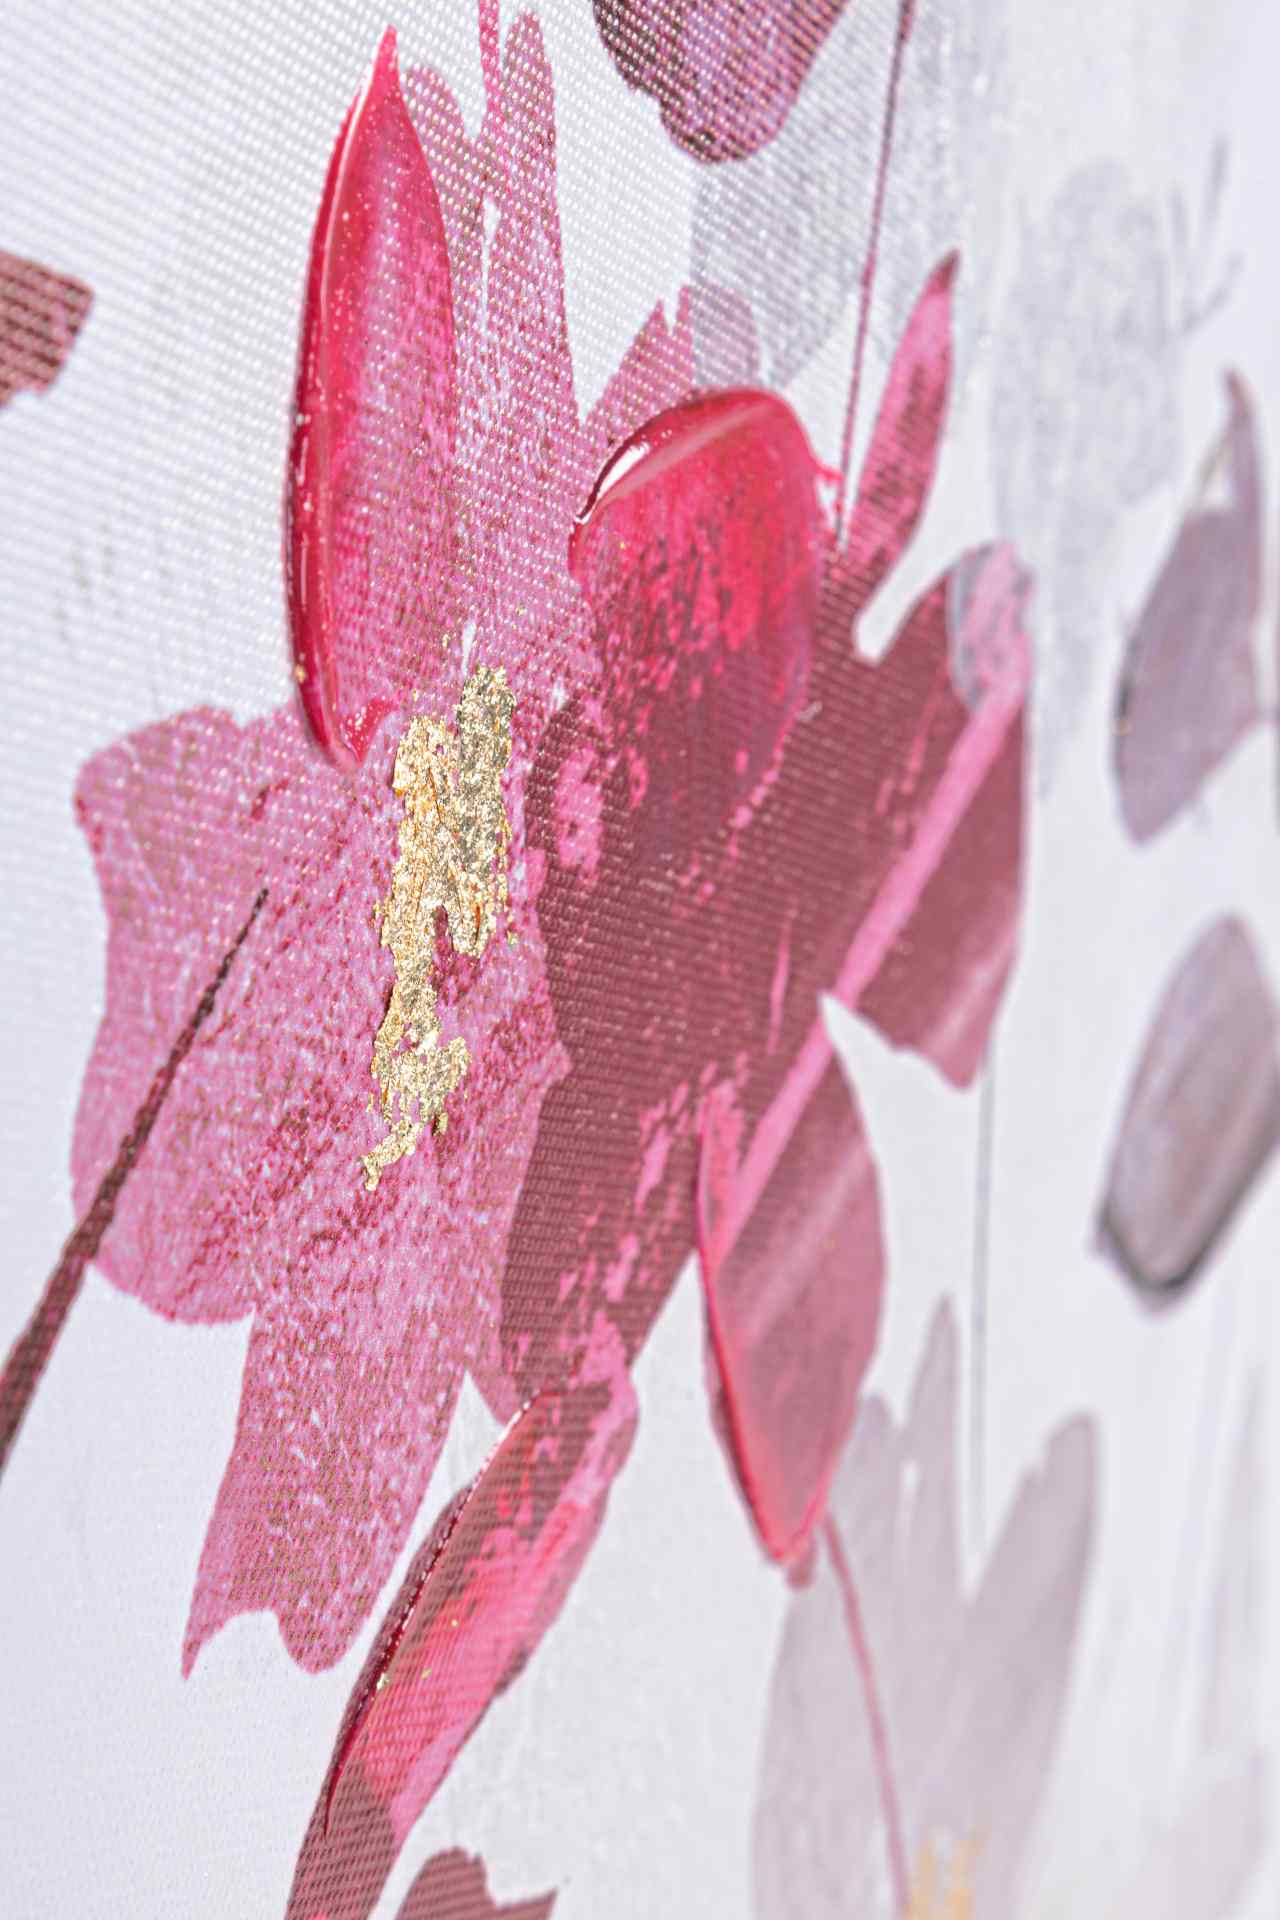 Das Ölbild Pink Flower No.1 überzeugt mit ihrem klassischen Design. Das Bild verfügt über einen Druck auf Leinwand. Das Gestell ist aus Tannenholz und der Rahmen aus Kunststoff. Die Maße sind 122x82 cm.